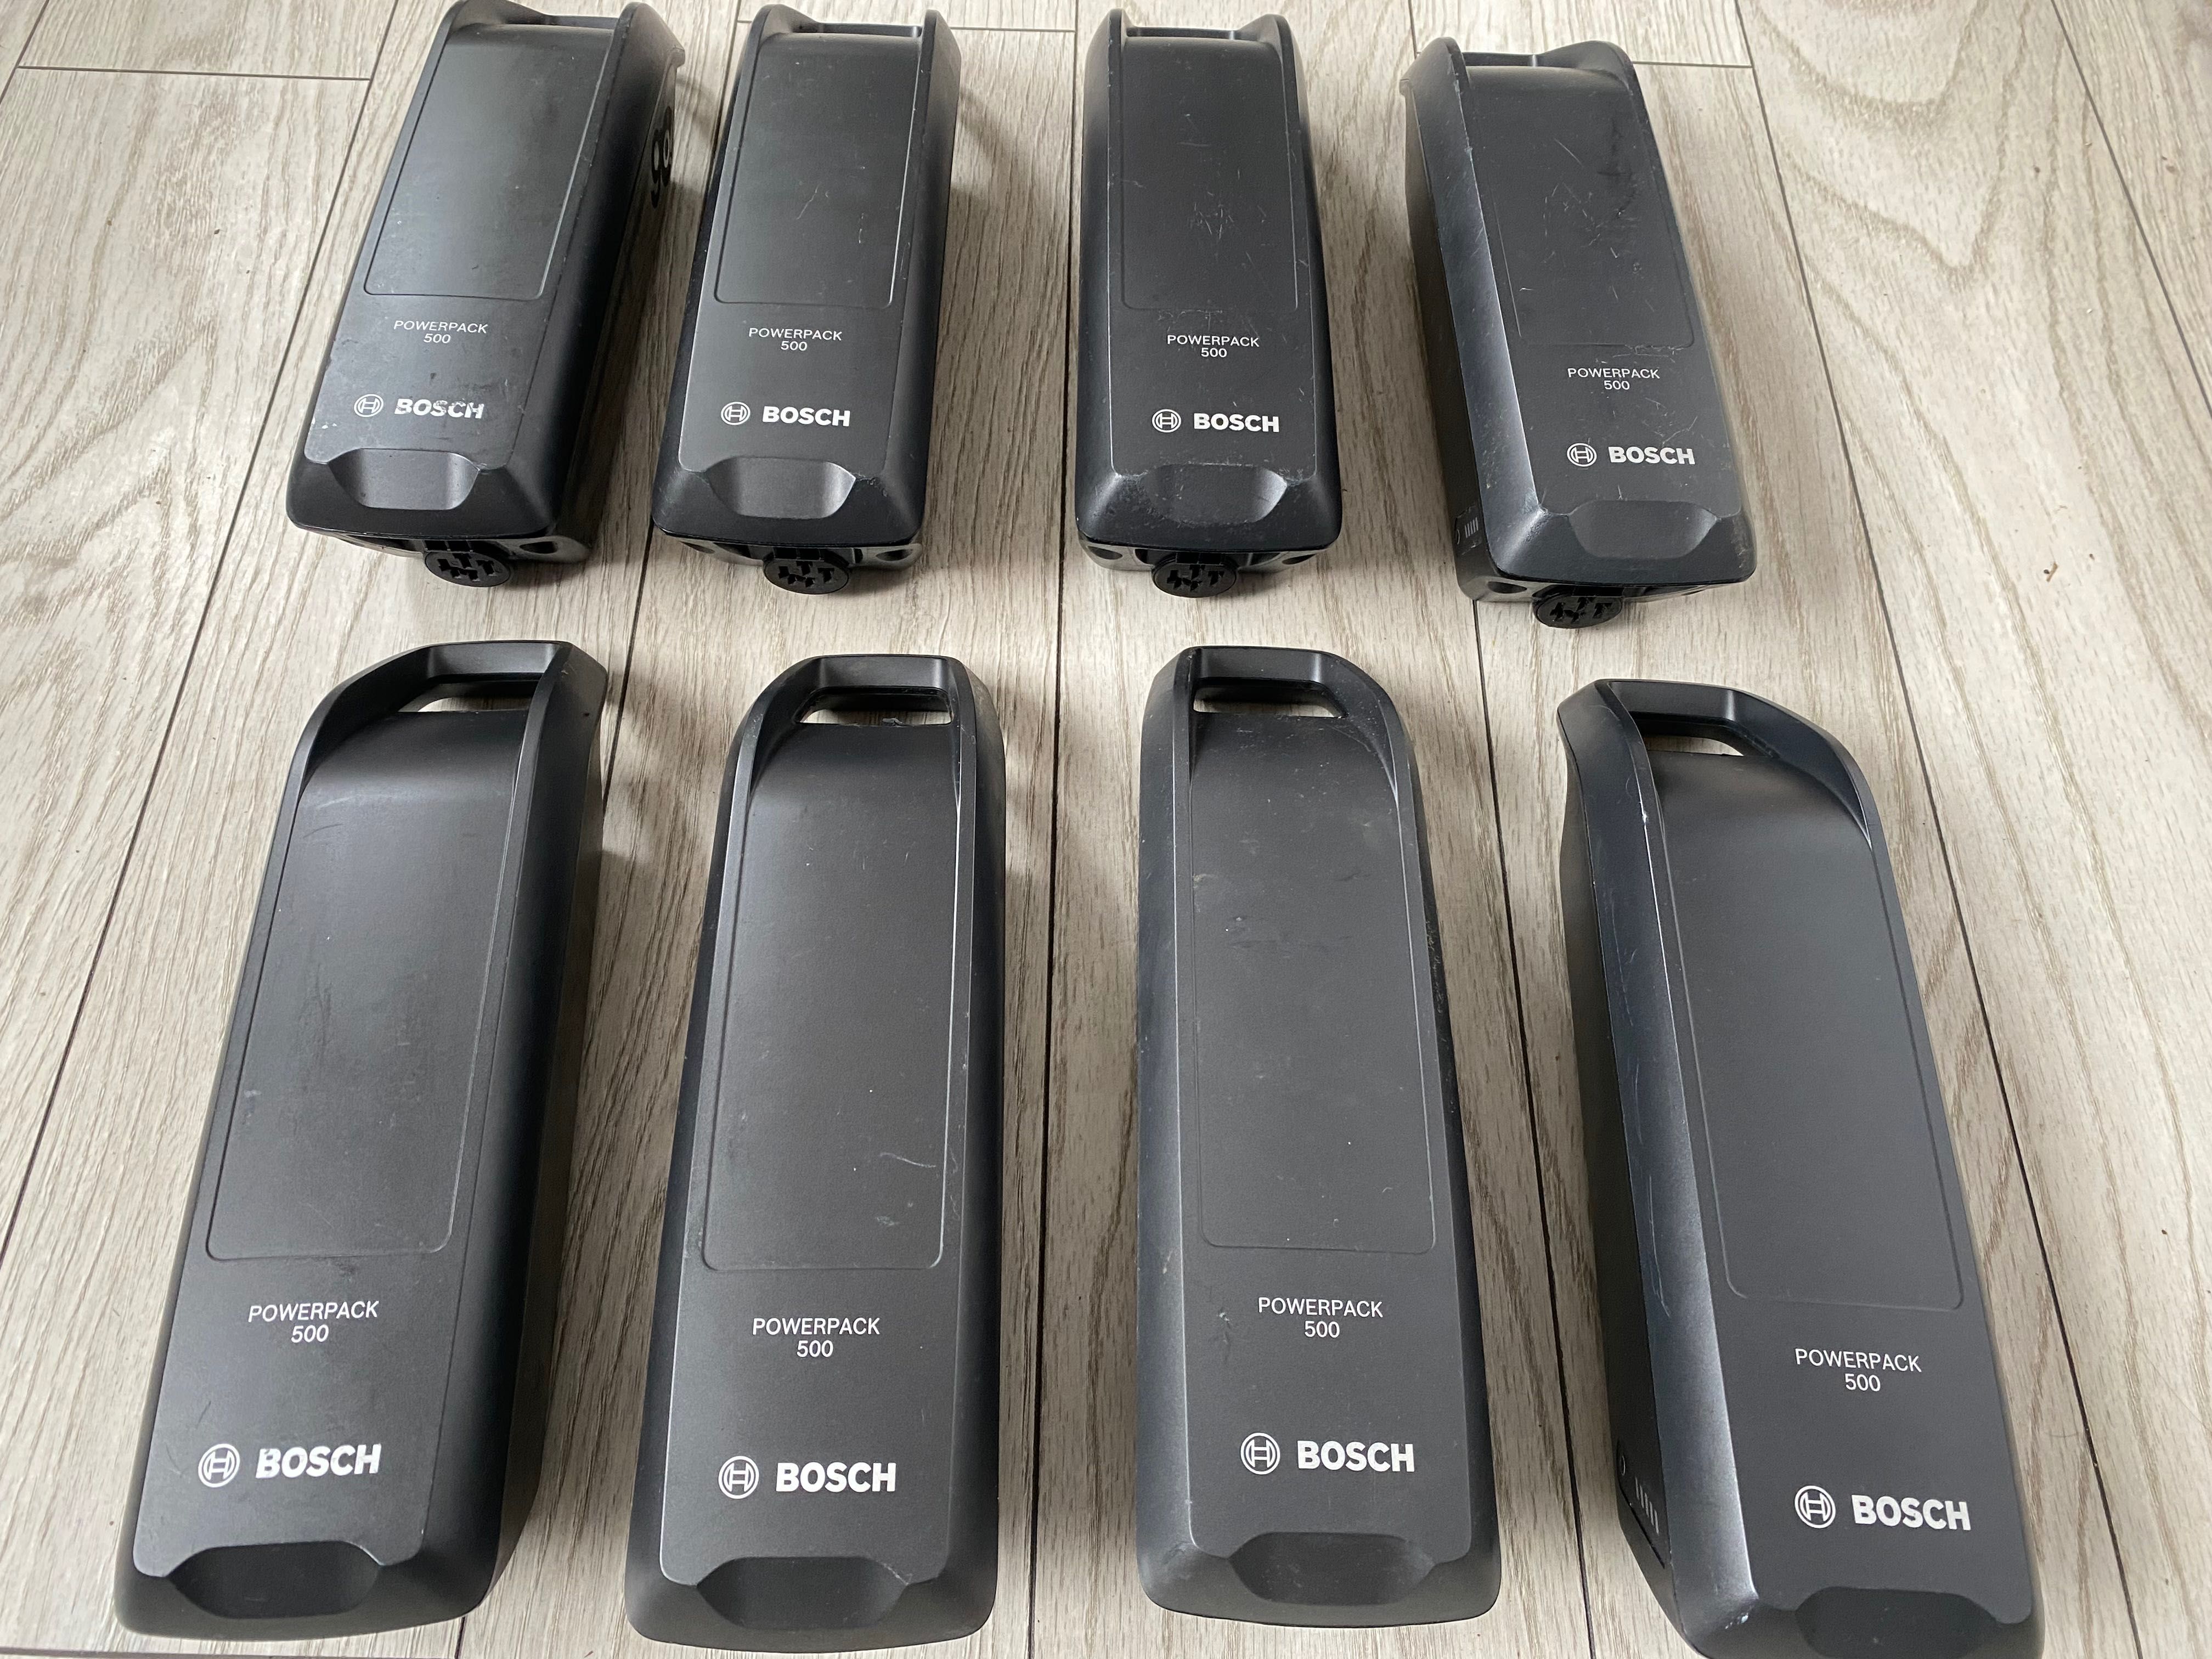 Baterie Bosch Powerpack 500 wh, powerpack 545 Wh, powerpack 400